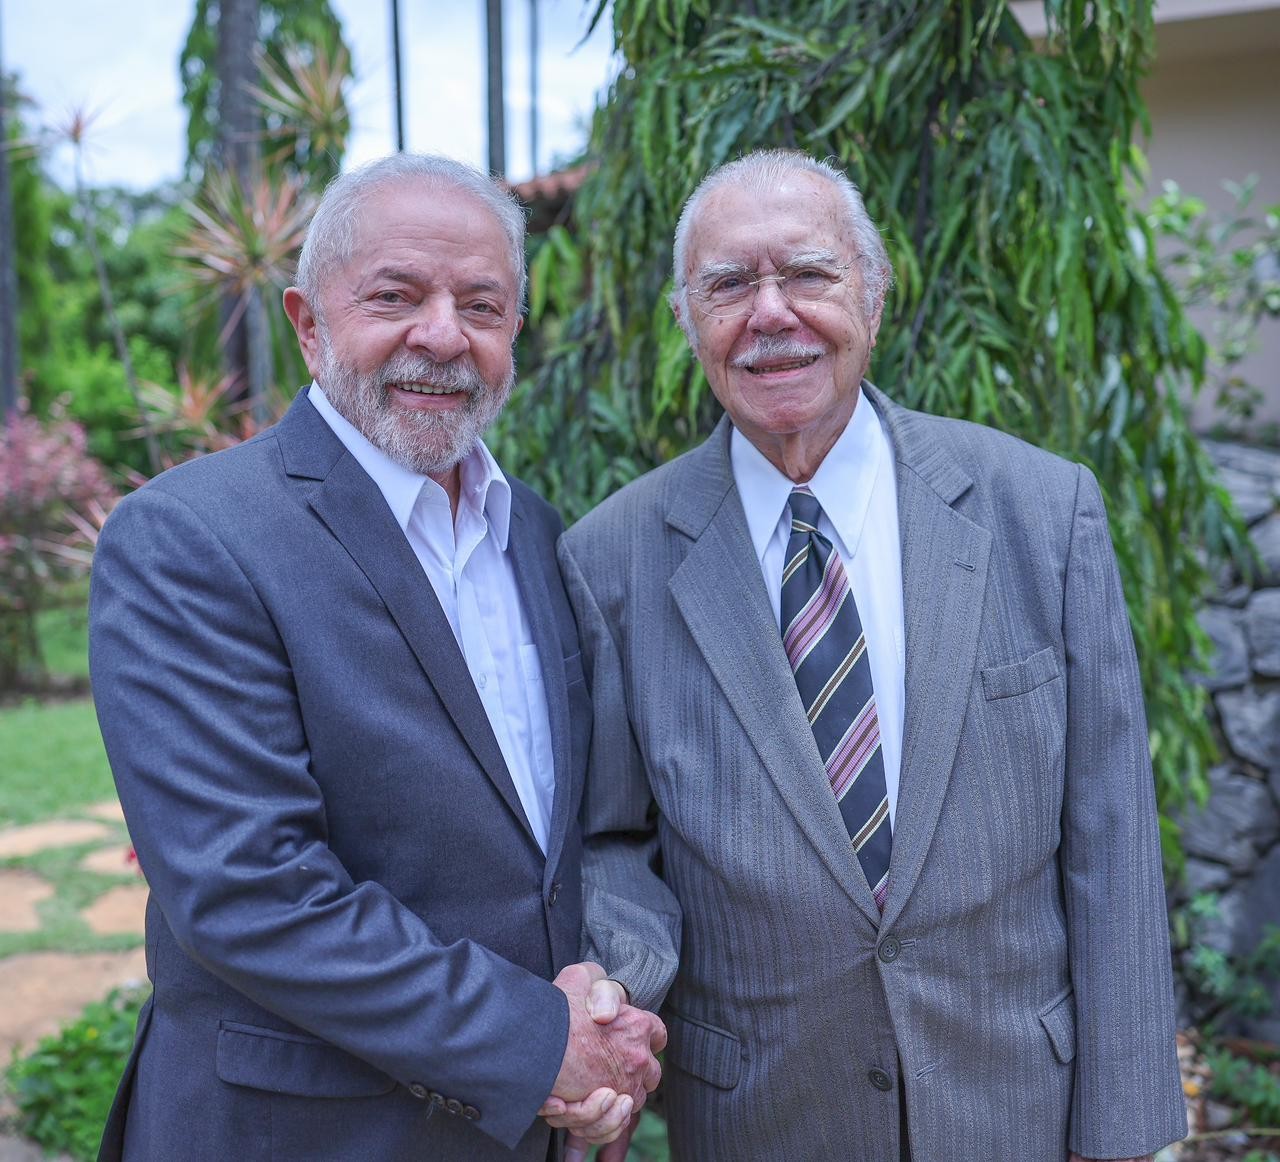 Em Brasília para cuidar da transição de governo, Lula visita ex-presidente Sarney